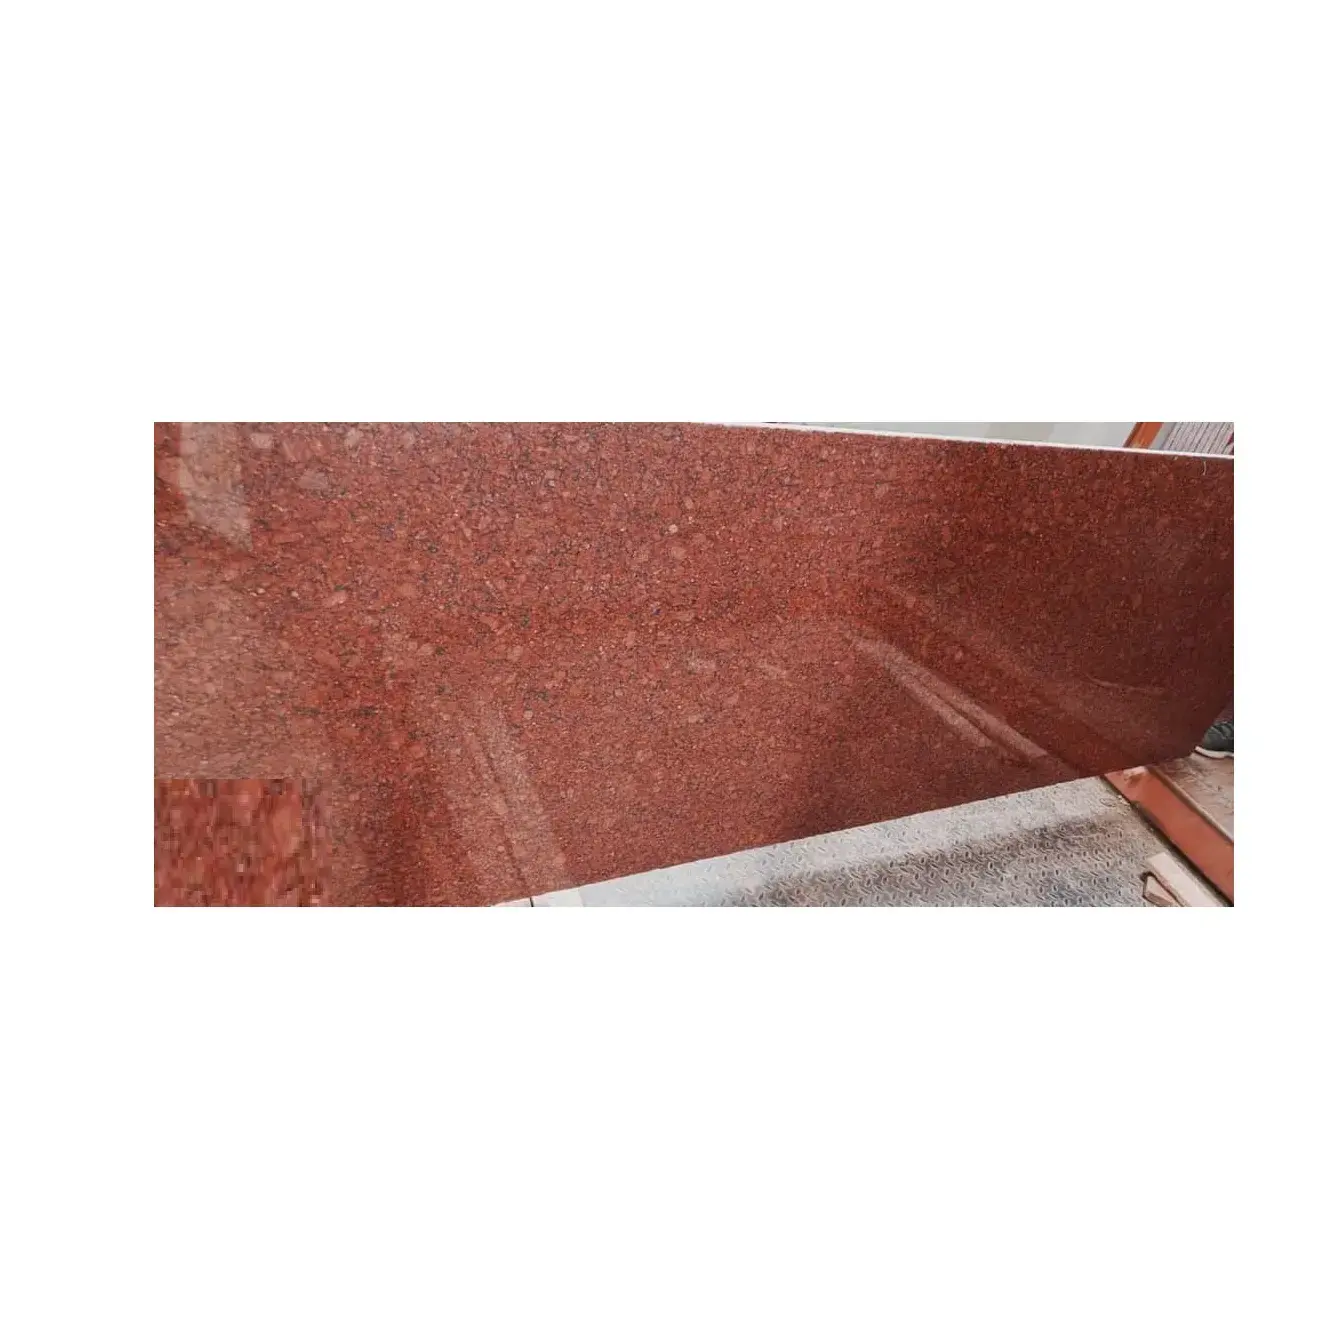 Losa de granito rojo claro imperial del norte de calidad estándar para decoración de paredes y pisos con disponibilidad de exportación sin problemas